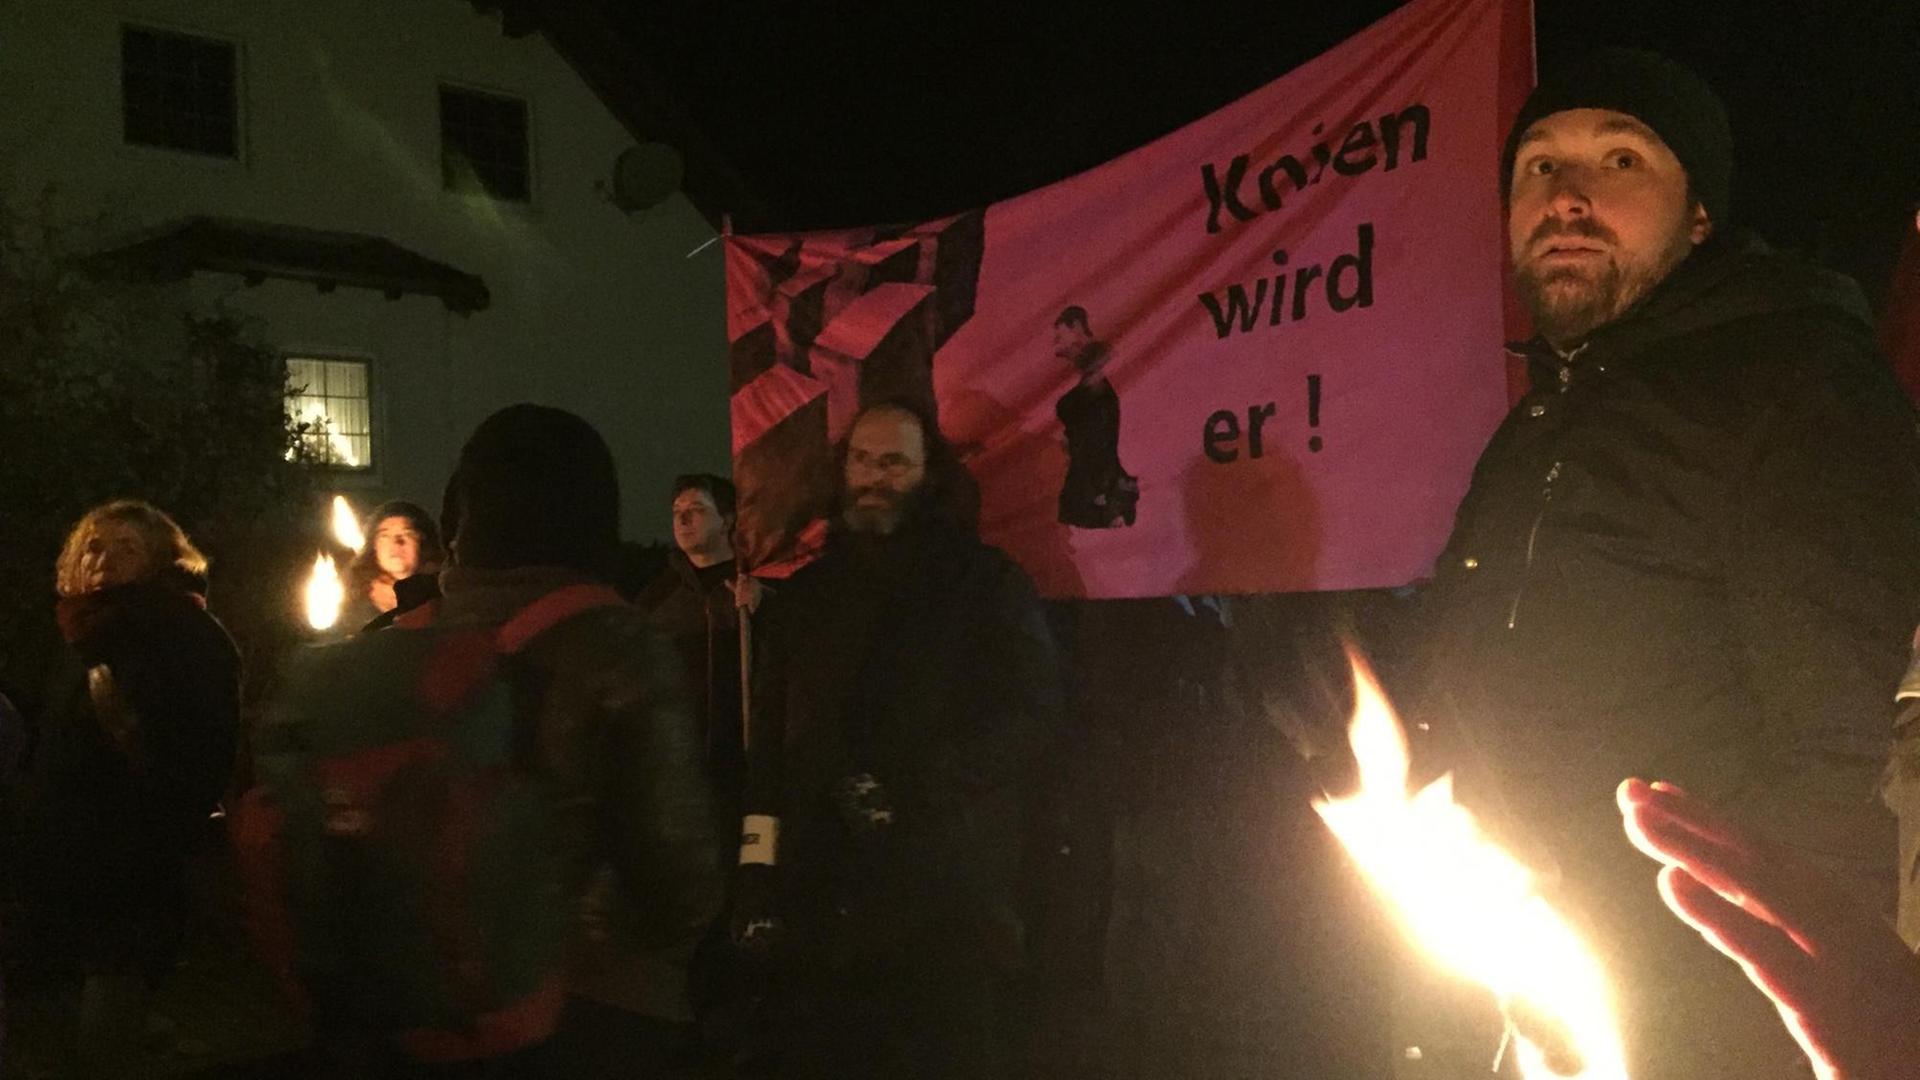 Mitglieder einer Antifa-Demo in Bornhagen halten ein Banner hoch auf dem "Knien wird er" geschrieben steht. Der Satz bezieht sich auf die Forderung der Stelen-Künstler, der AfD-Politiker Björn Höcke solle vor ihrer Holocaust-Nachbildung nieder knien.